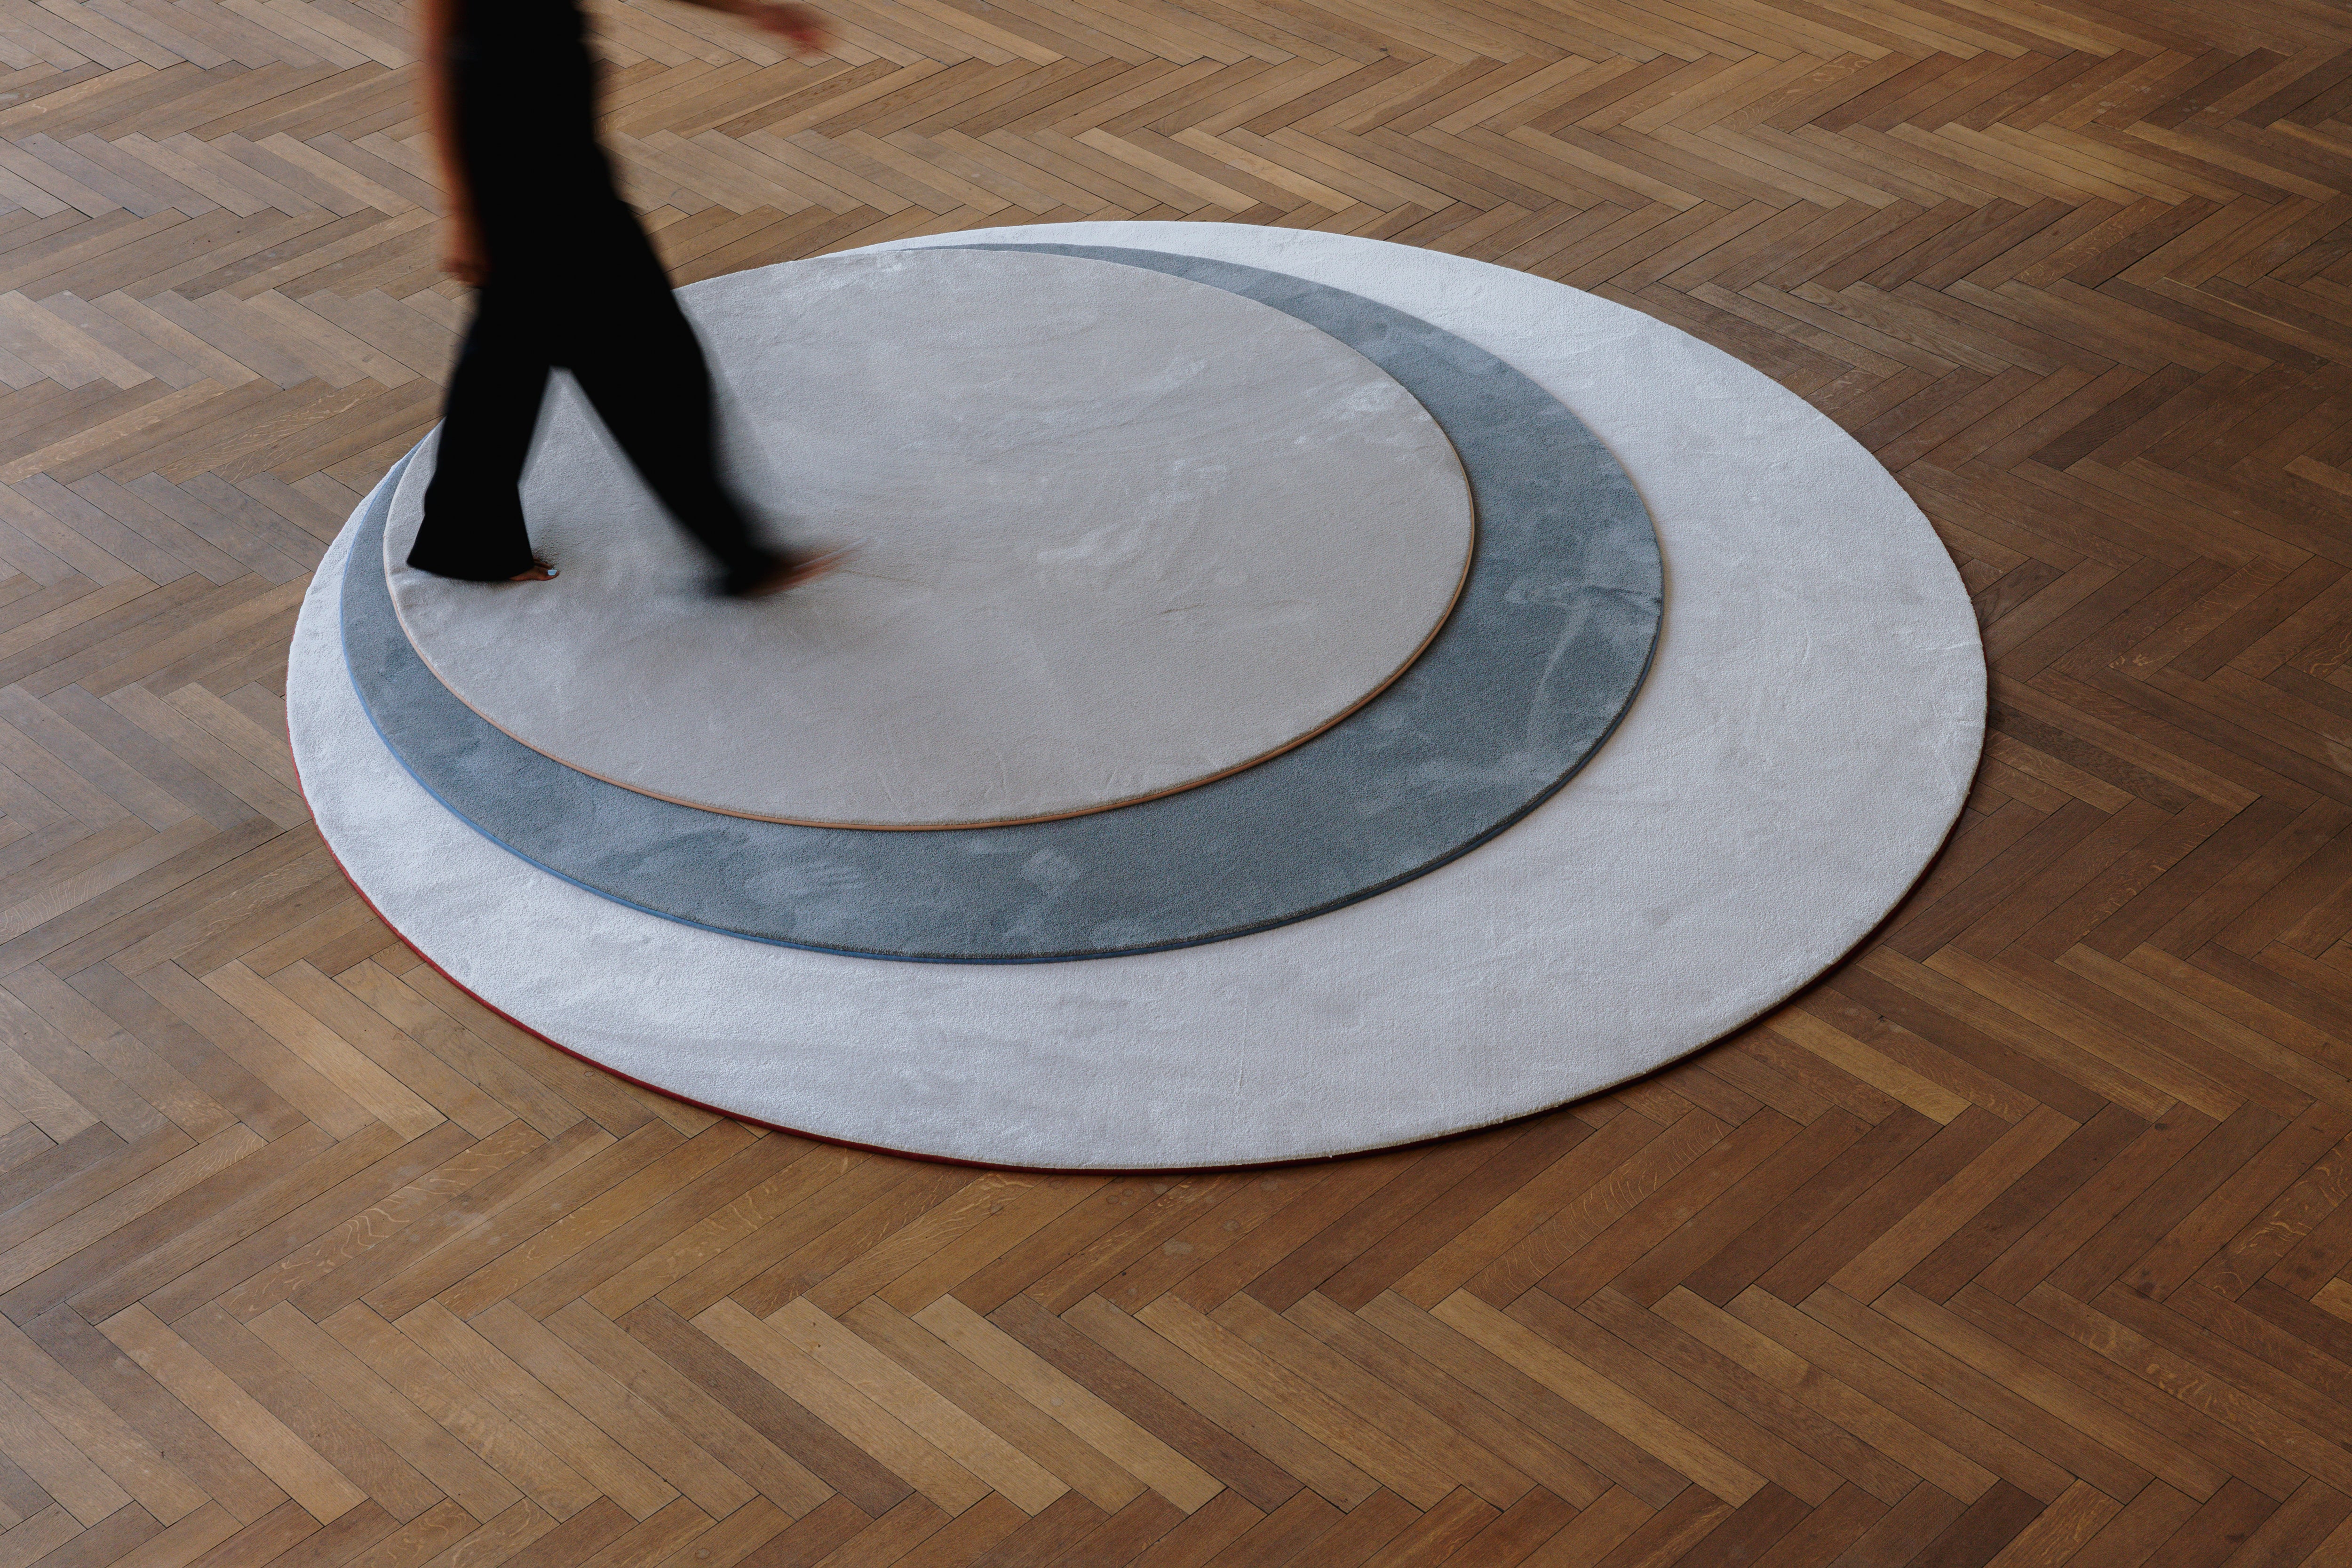 Persoon stappend over drie cirkelvormige zachte tapijten op maat in verschillende kleuren.